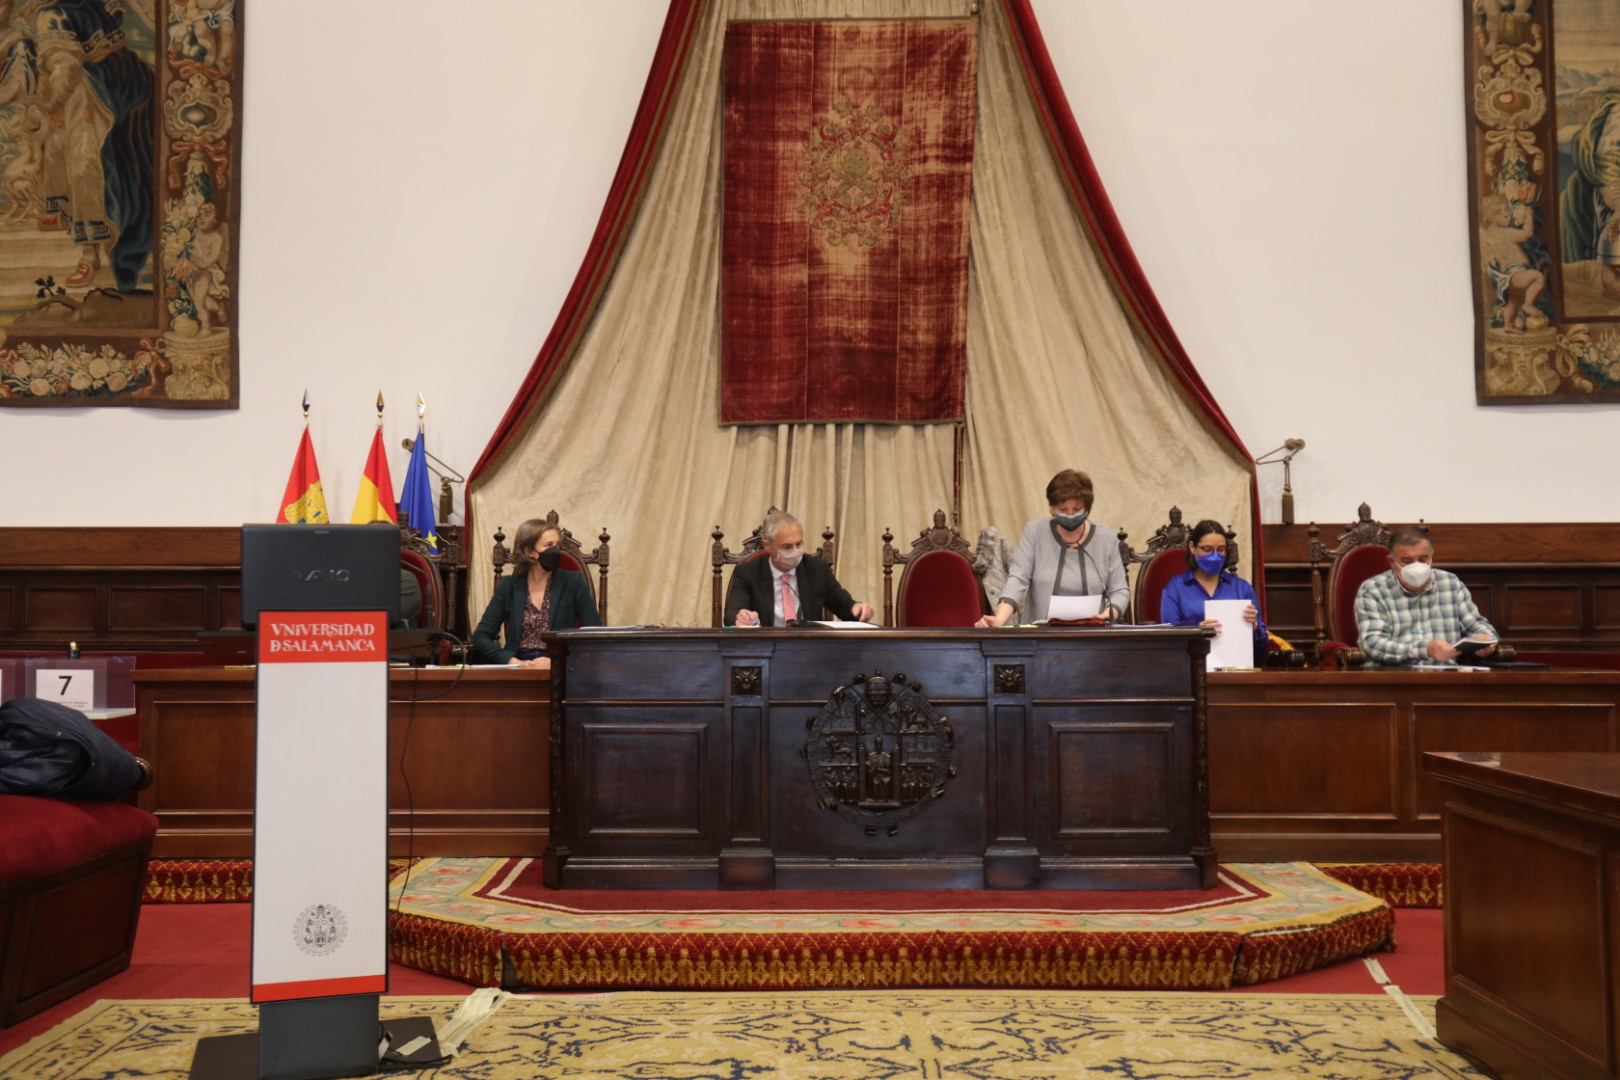 El rector reafirma ante el Claustro la solvencia económica y el crecimiento nacional e internacional de la Universidad de Salamanca